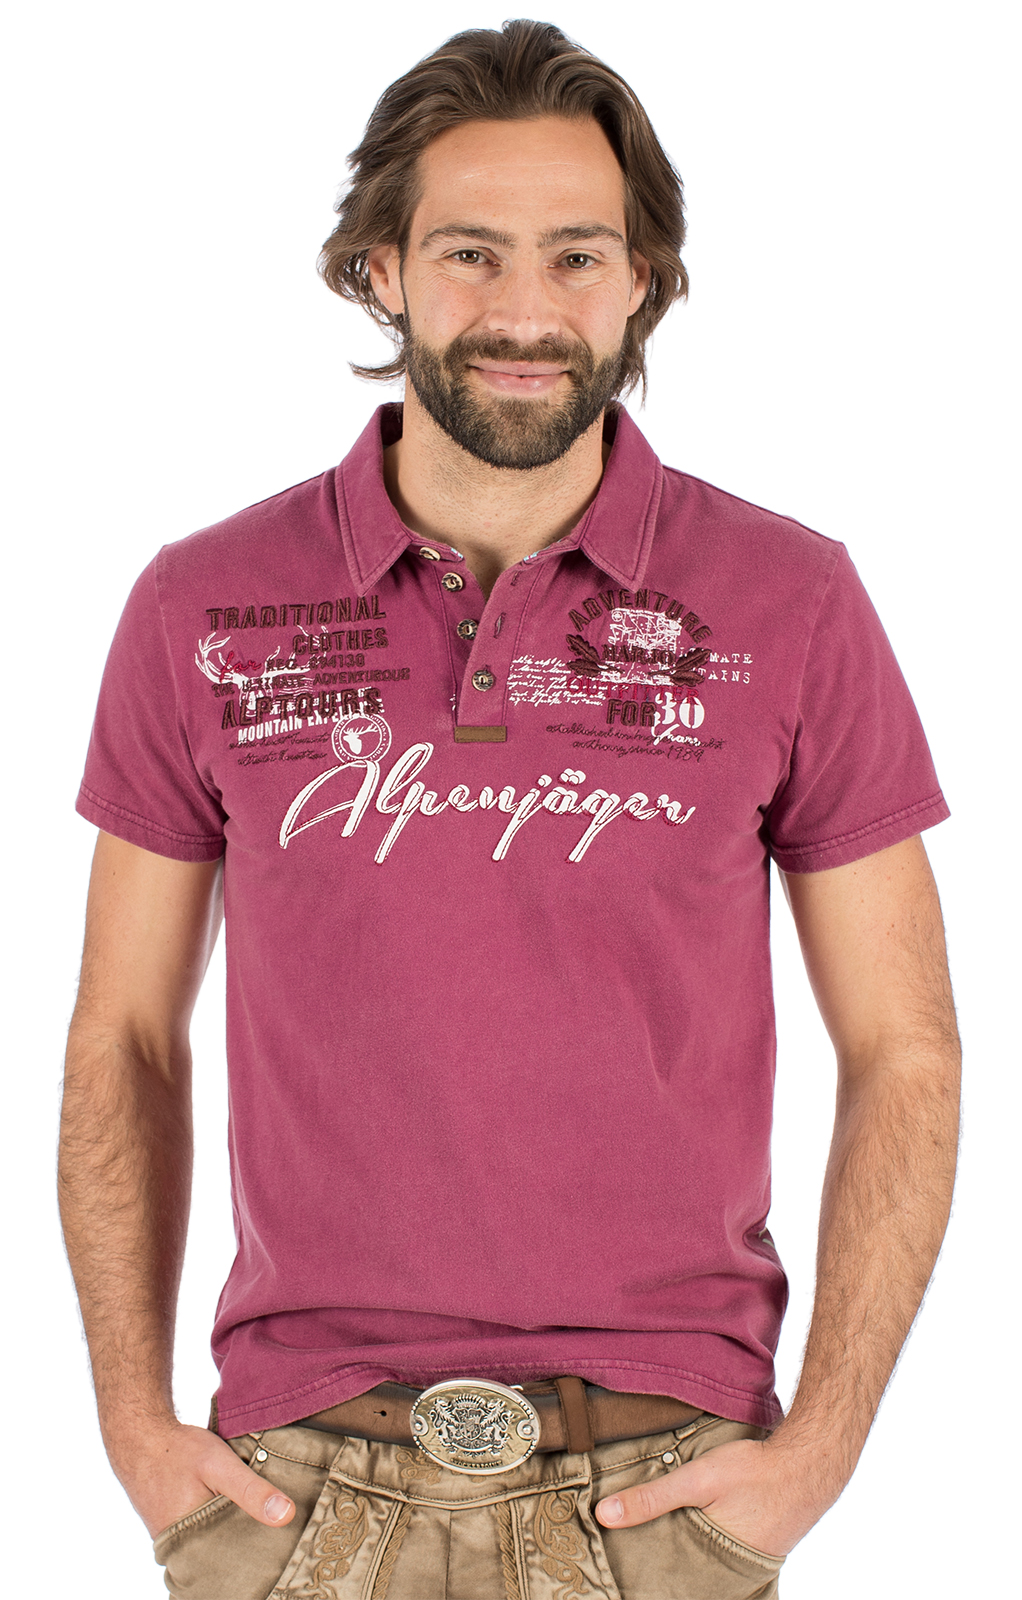 weitere Bilder von Kostuums T-shirt E09 - ALPENJAEGER bordeaux